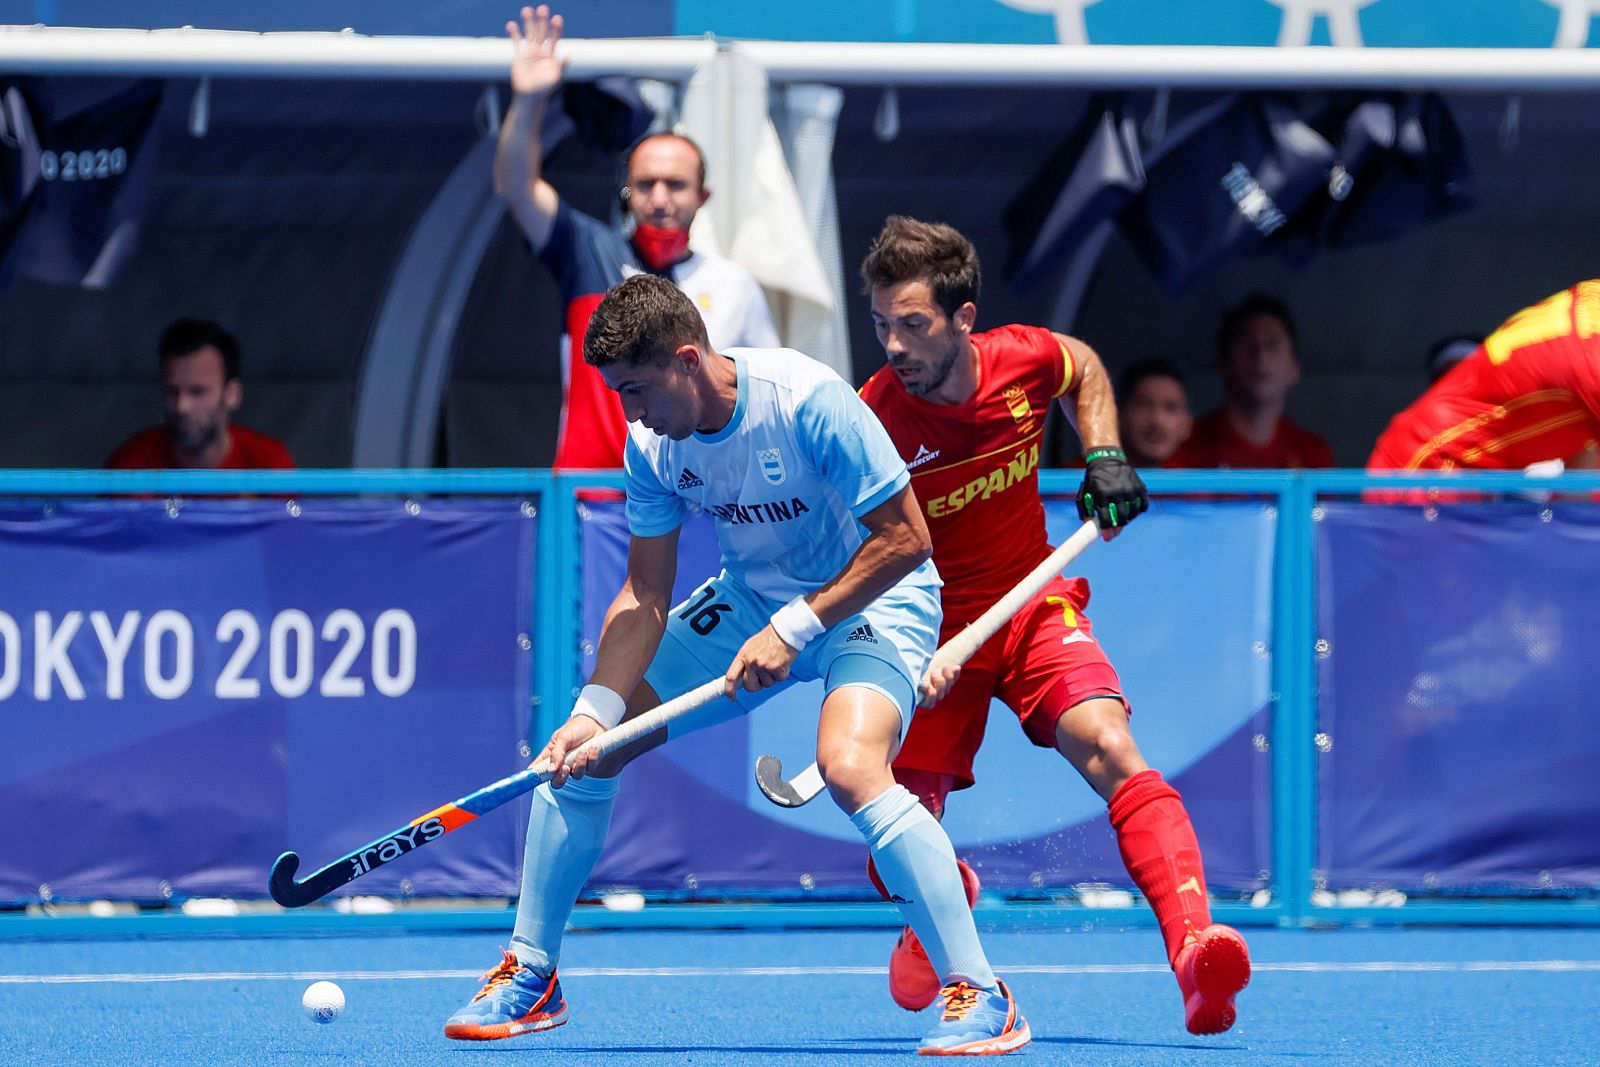 Hockey hierba - Masculino: Argentina - España. Juegos Olímpicos de Tokio 2020